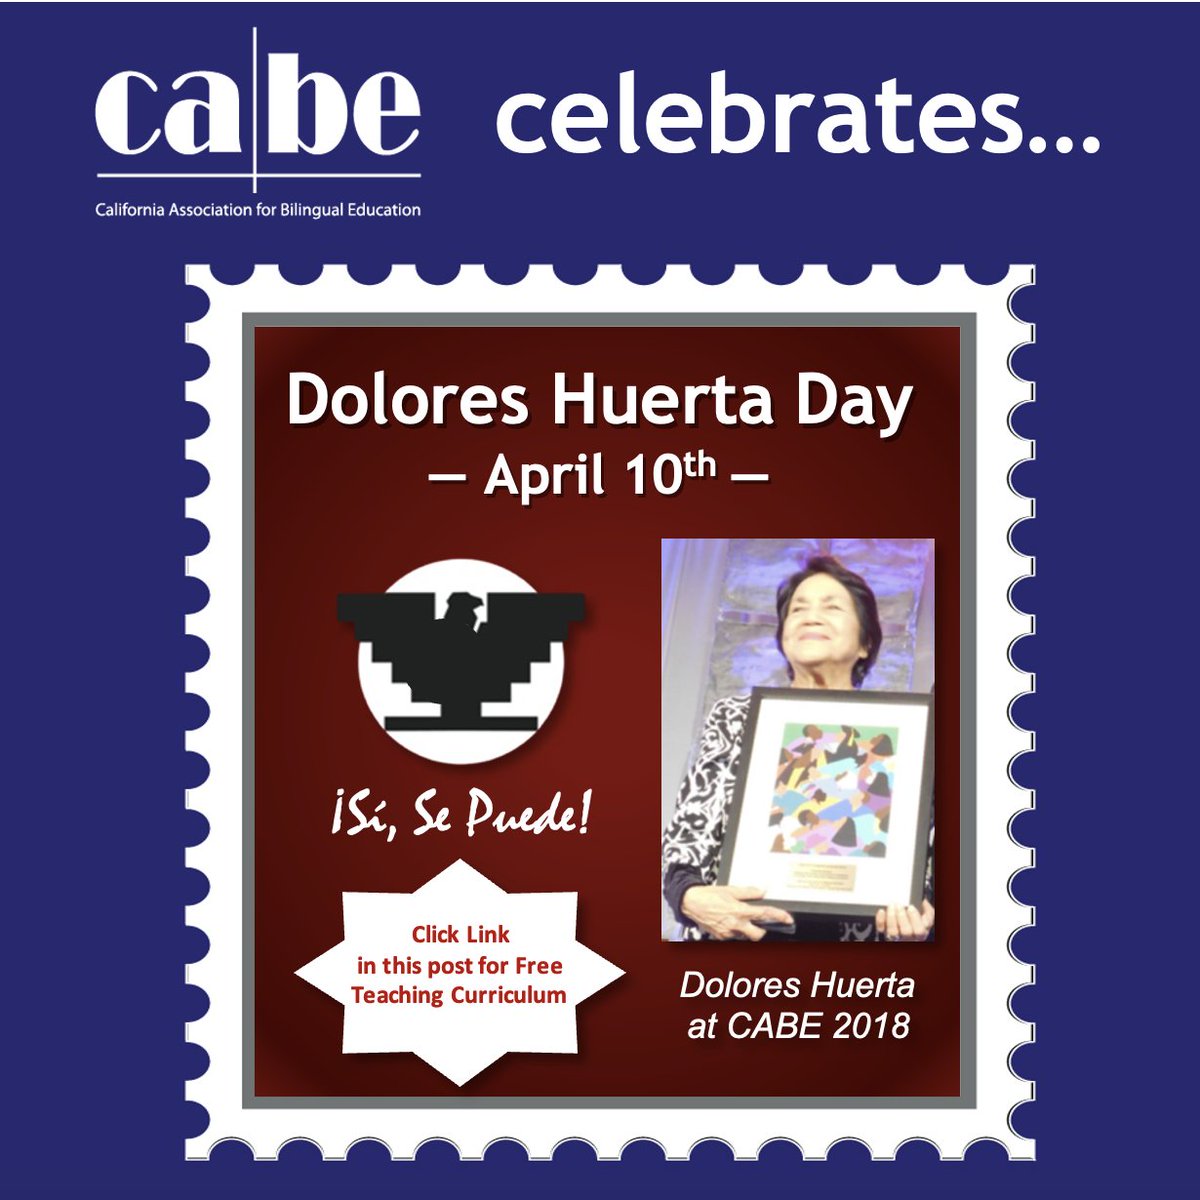 Teaching Curriculum for Dolores Huerta Day: doloreshuerta.org/curriculum/